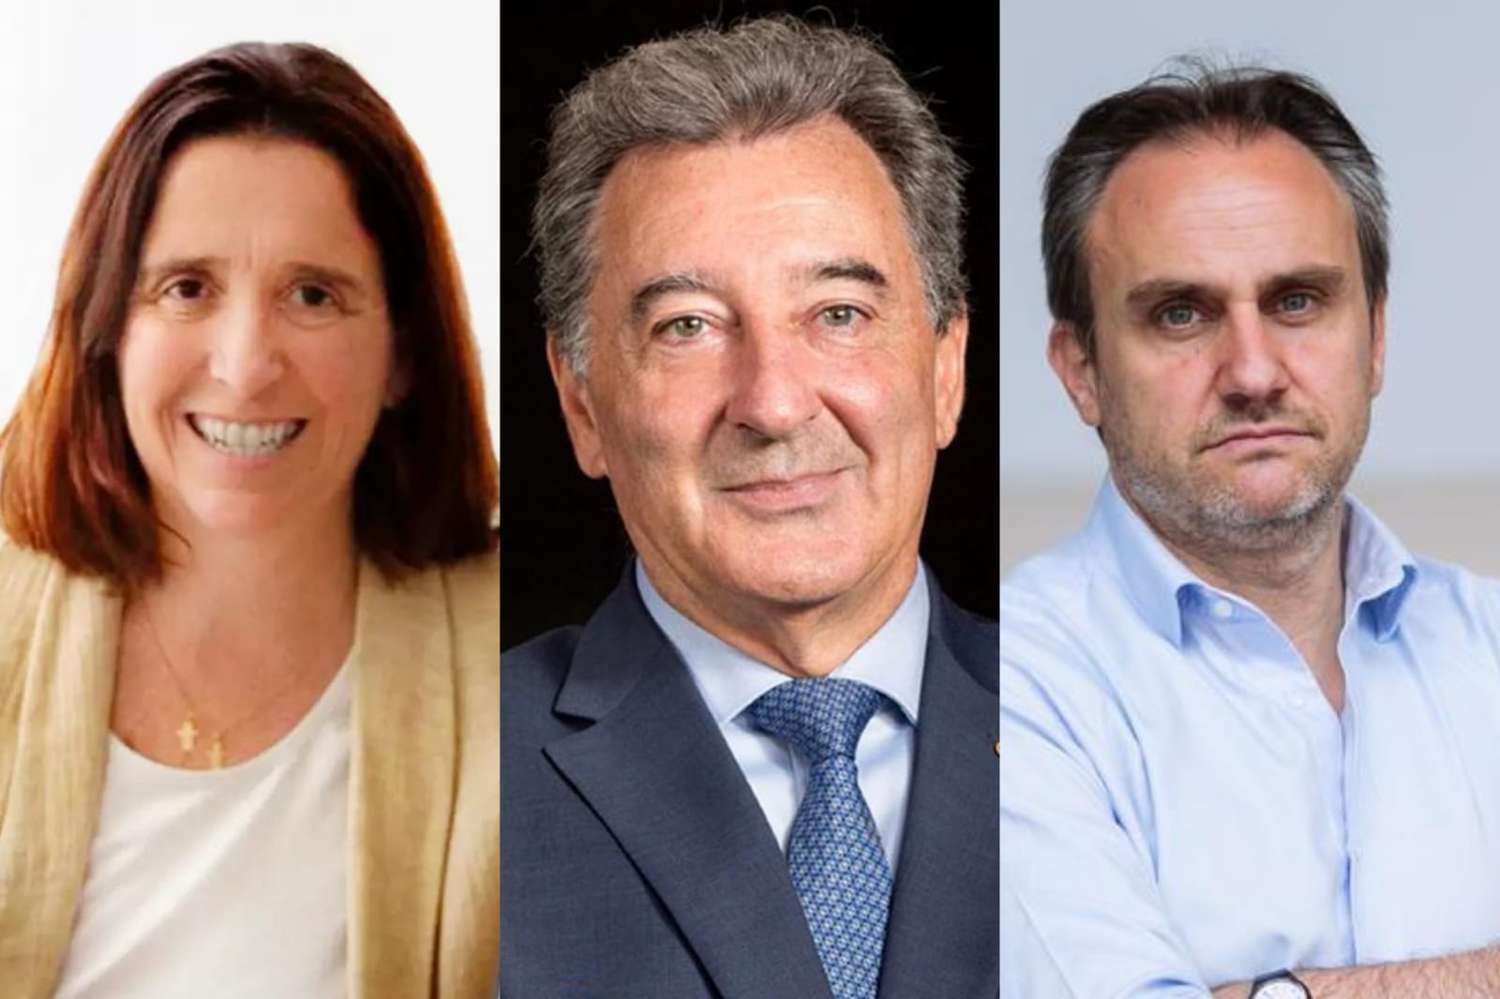 Dal Poggetto, Herrero y Etchemendy llegan a Rosario para debatir sobre reforma laboral en Argentina